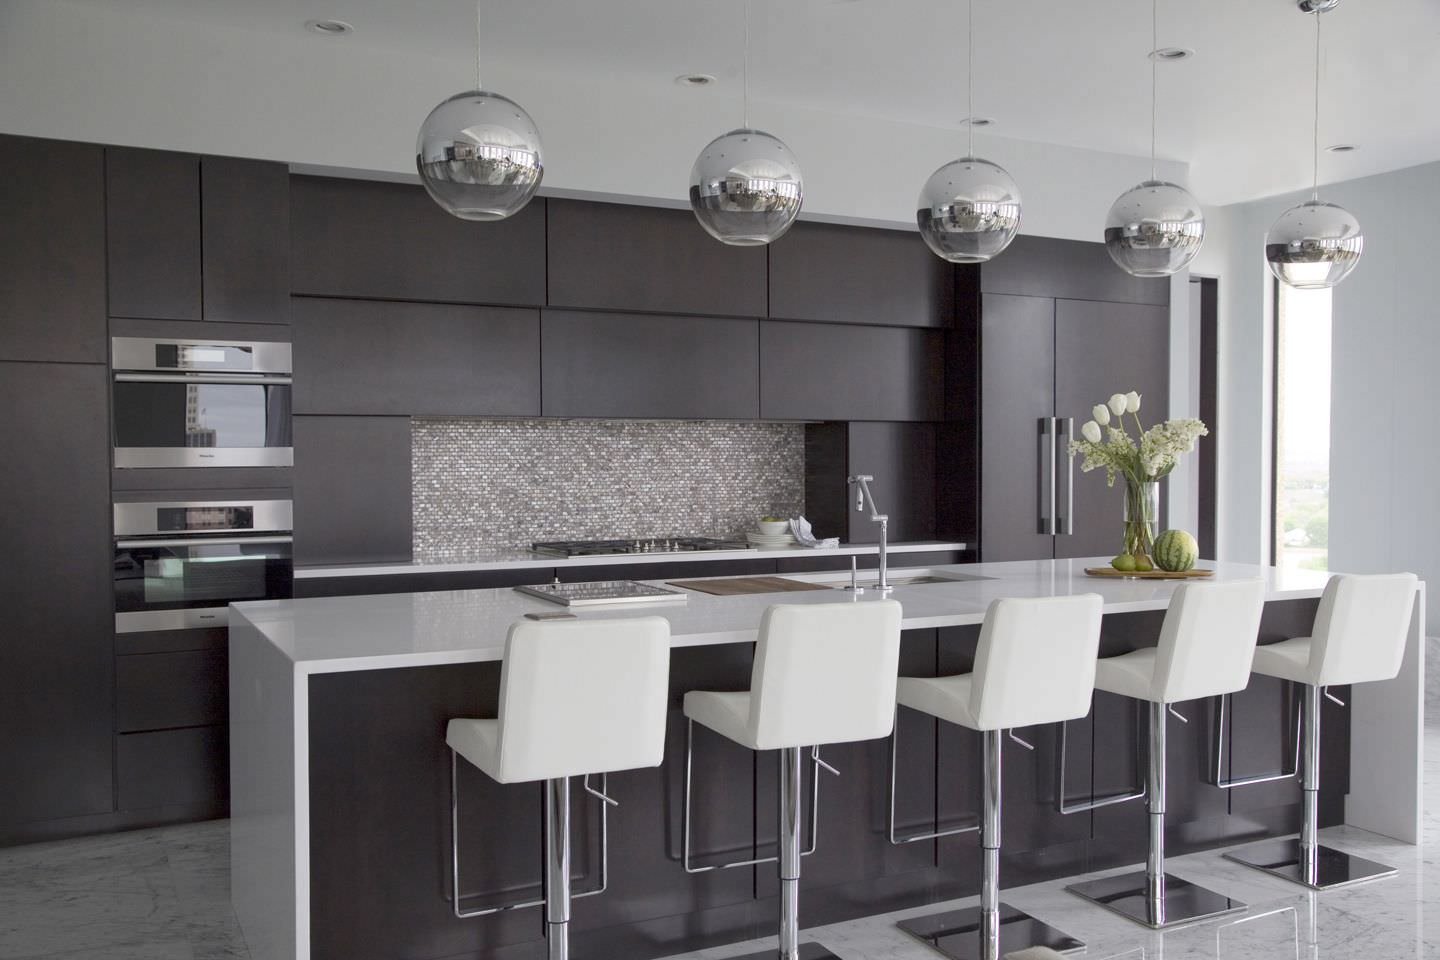 Cucina con isola elegante e lineare con il nero colore dominante. Il top e le sedute dei sgabelli in grigio chiaro, così come anche il pavimento in marmo.